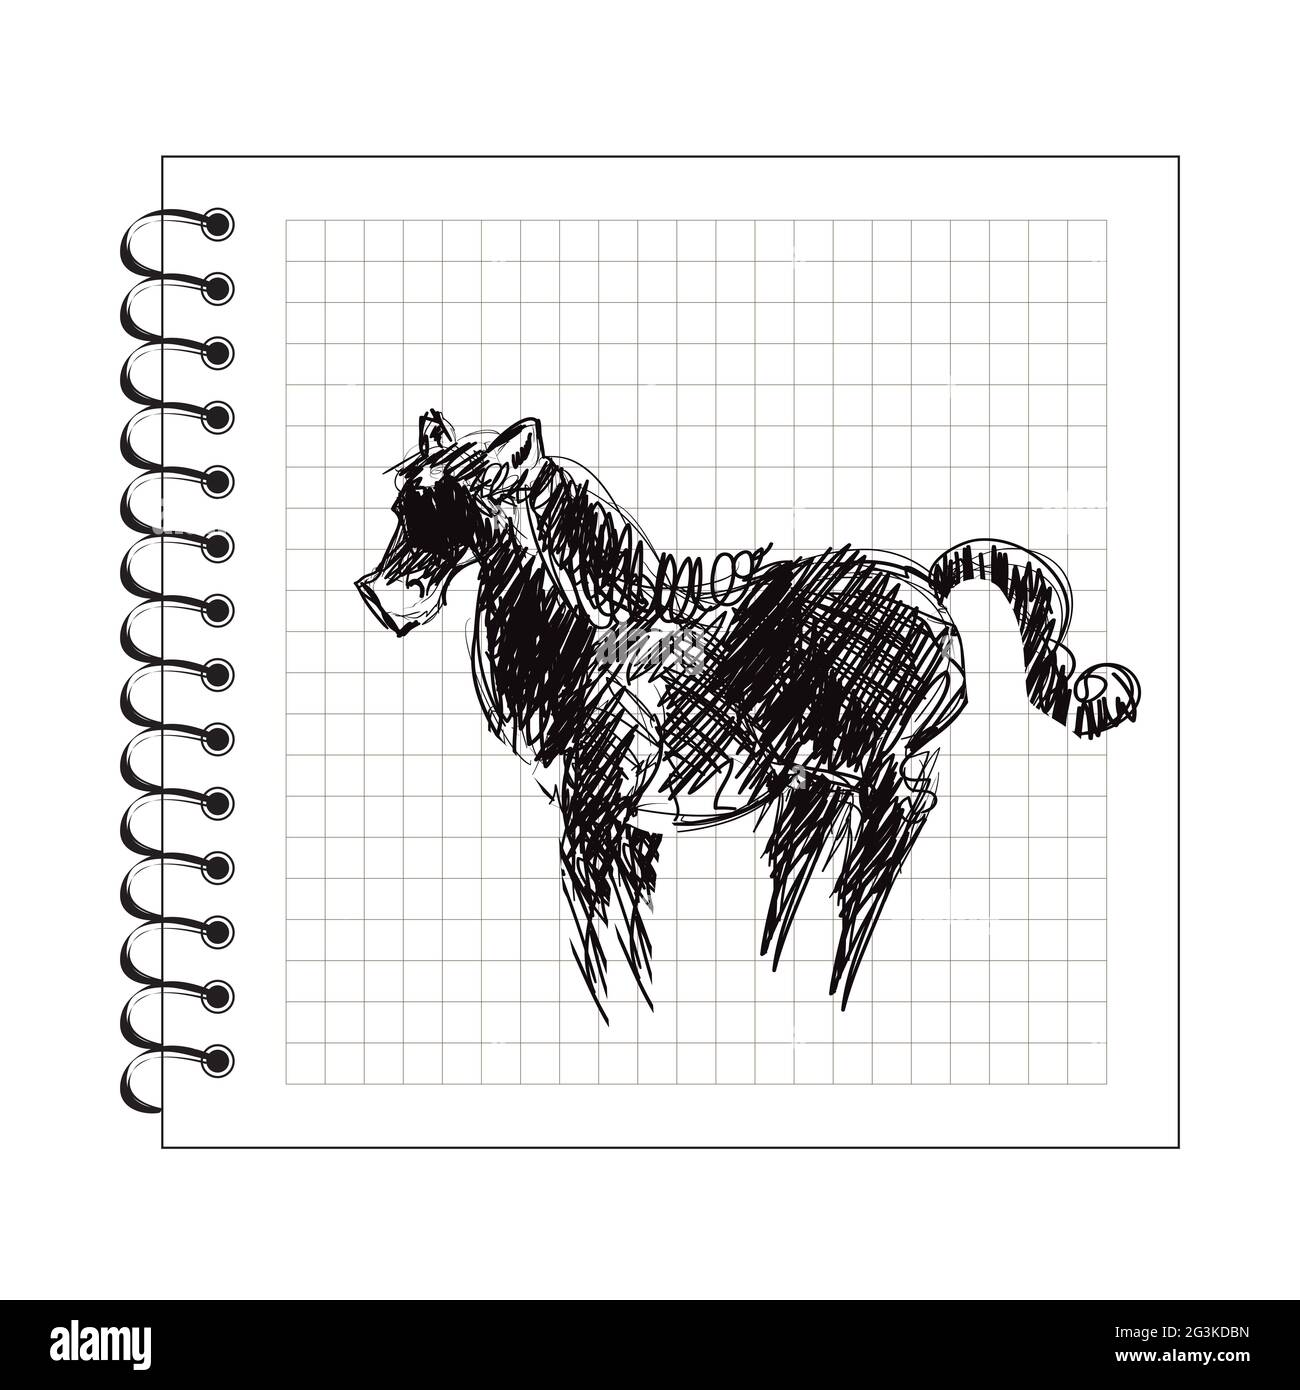 Illustrazione del cavallo di doodle su carta del blocco note Foto Stock